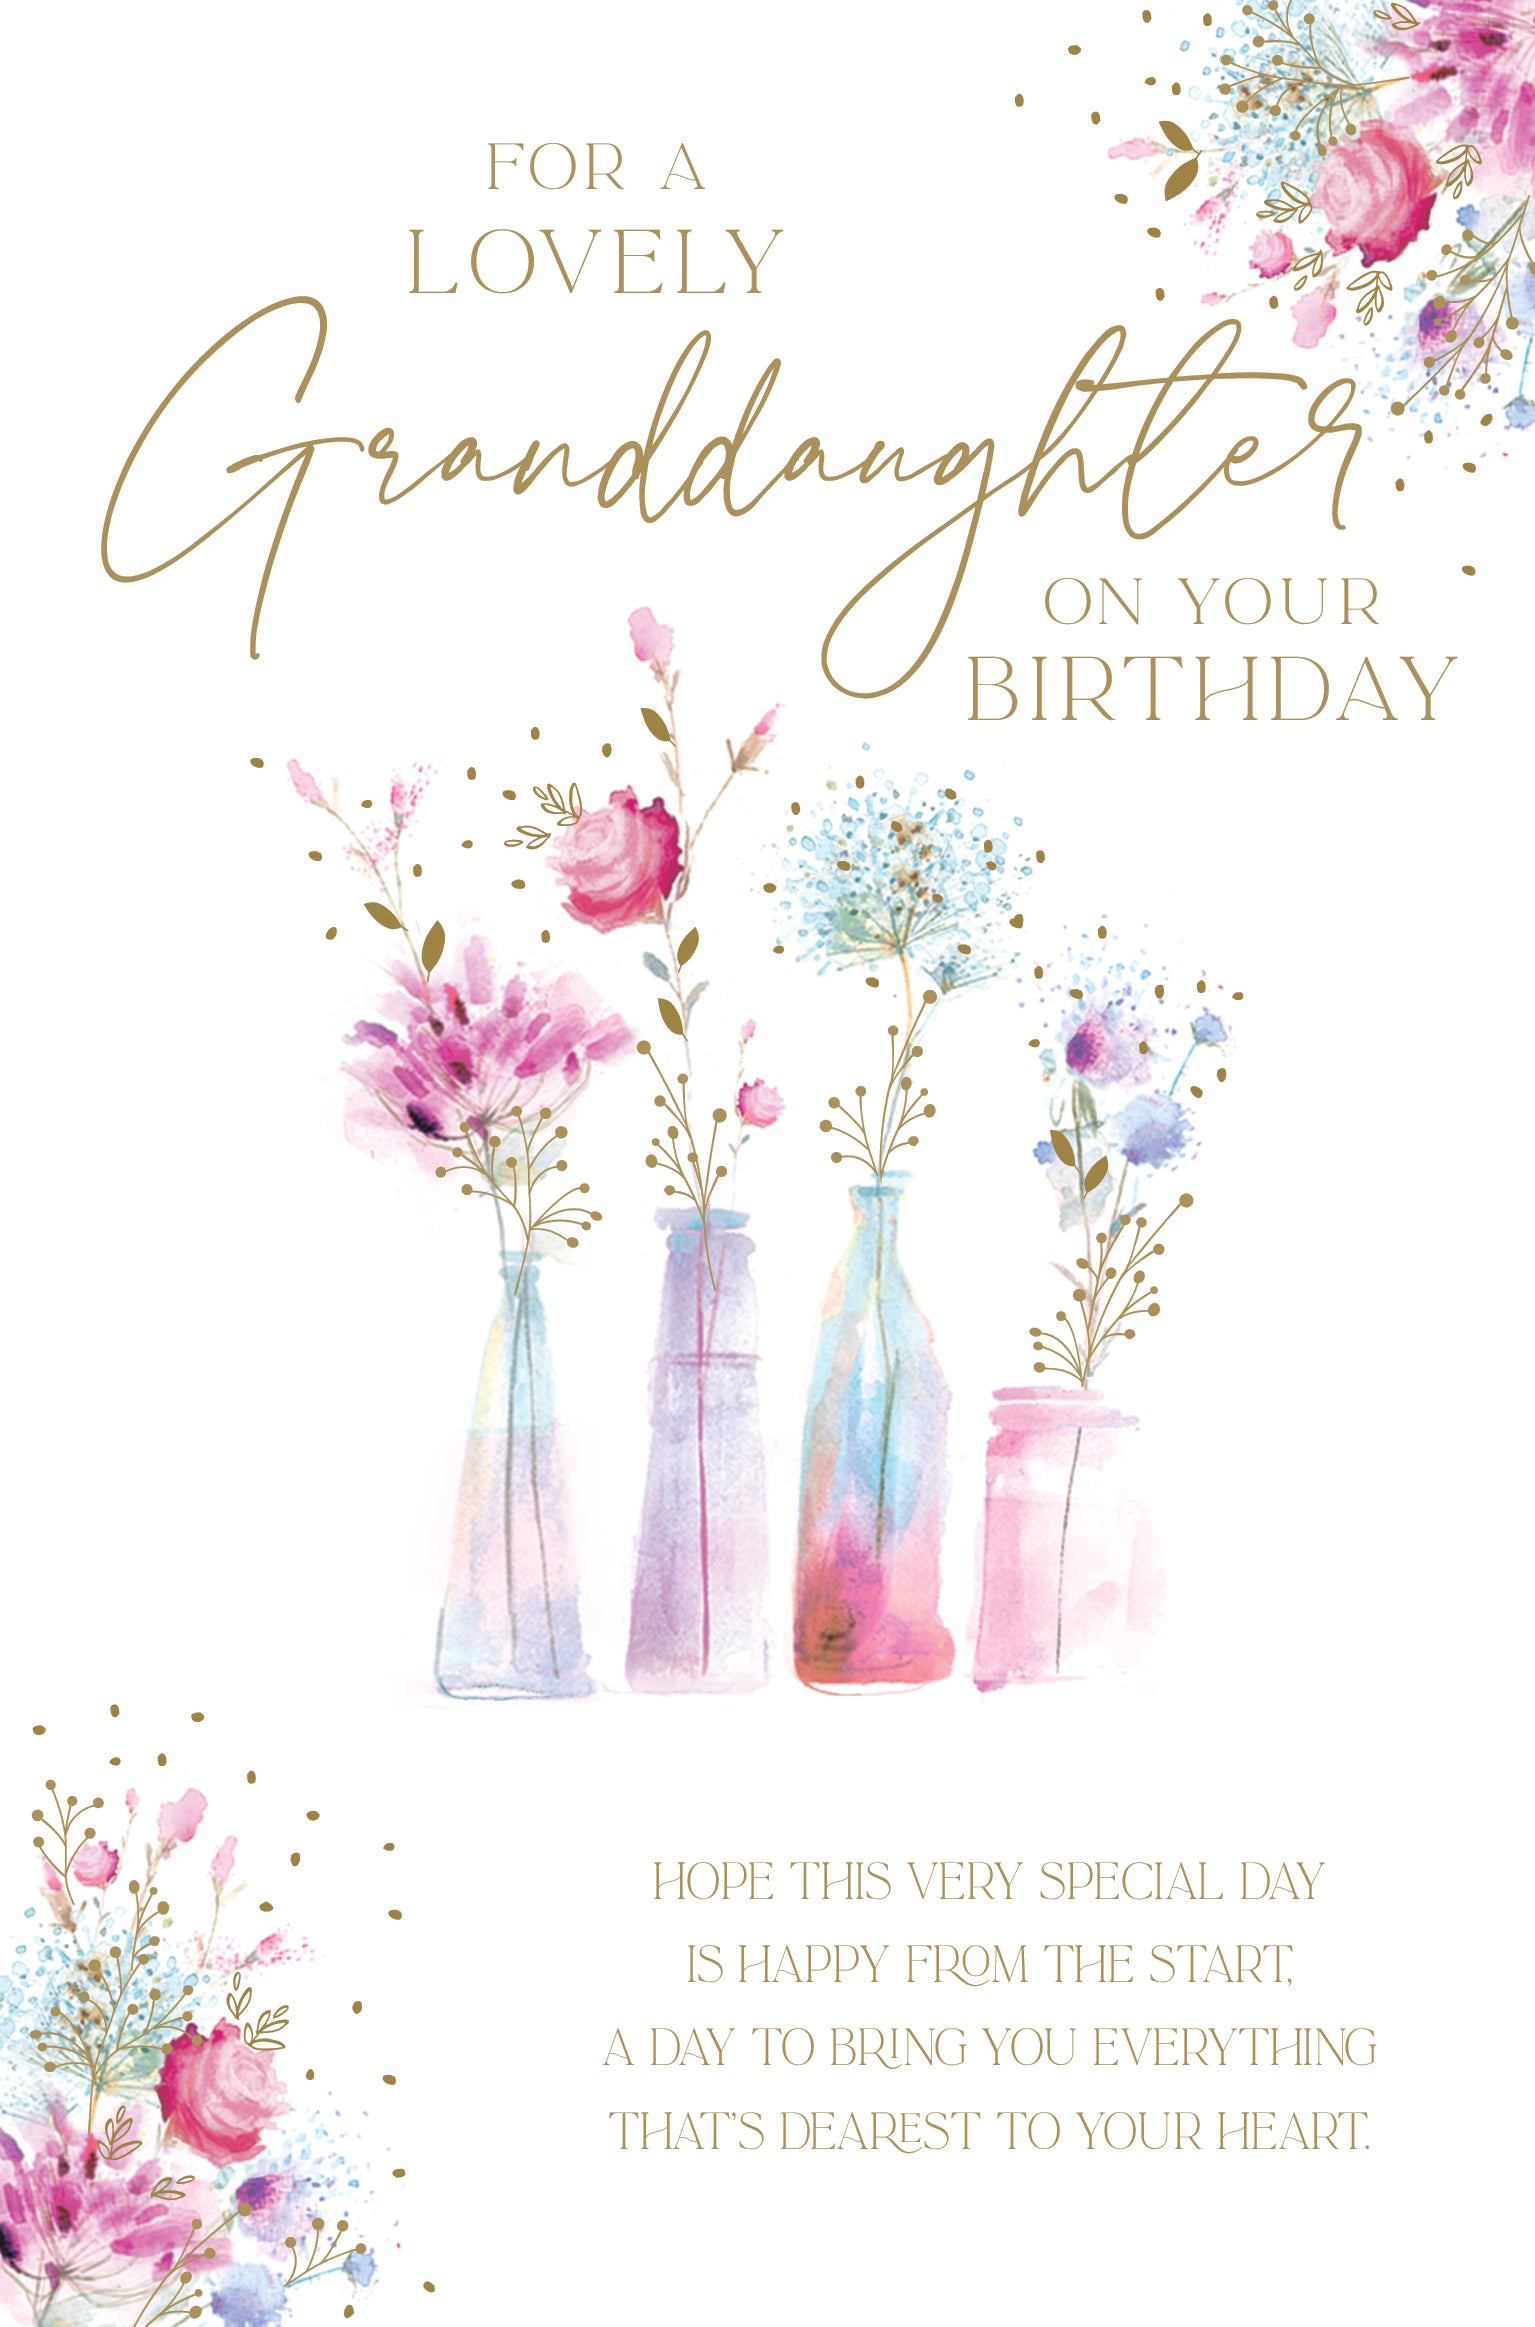 Birthday Granddaughter Card - Flowers In Vases